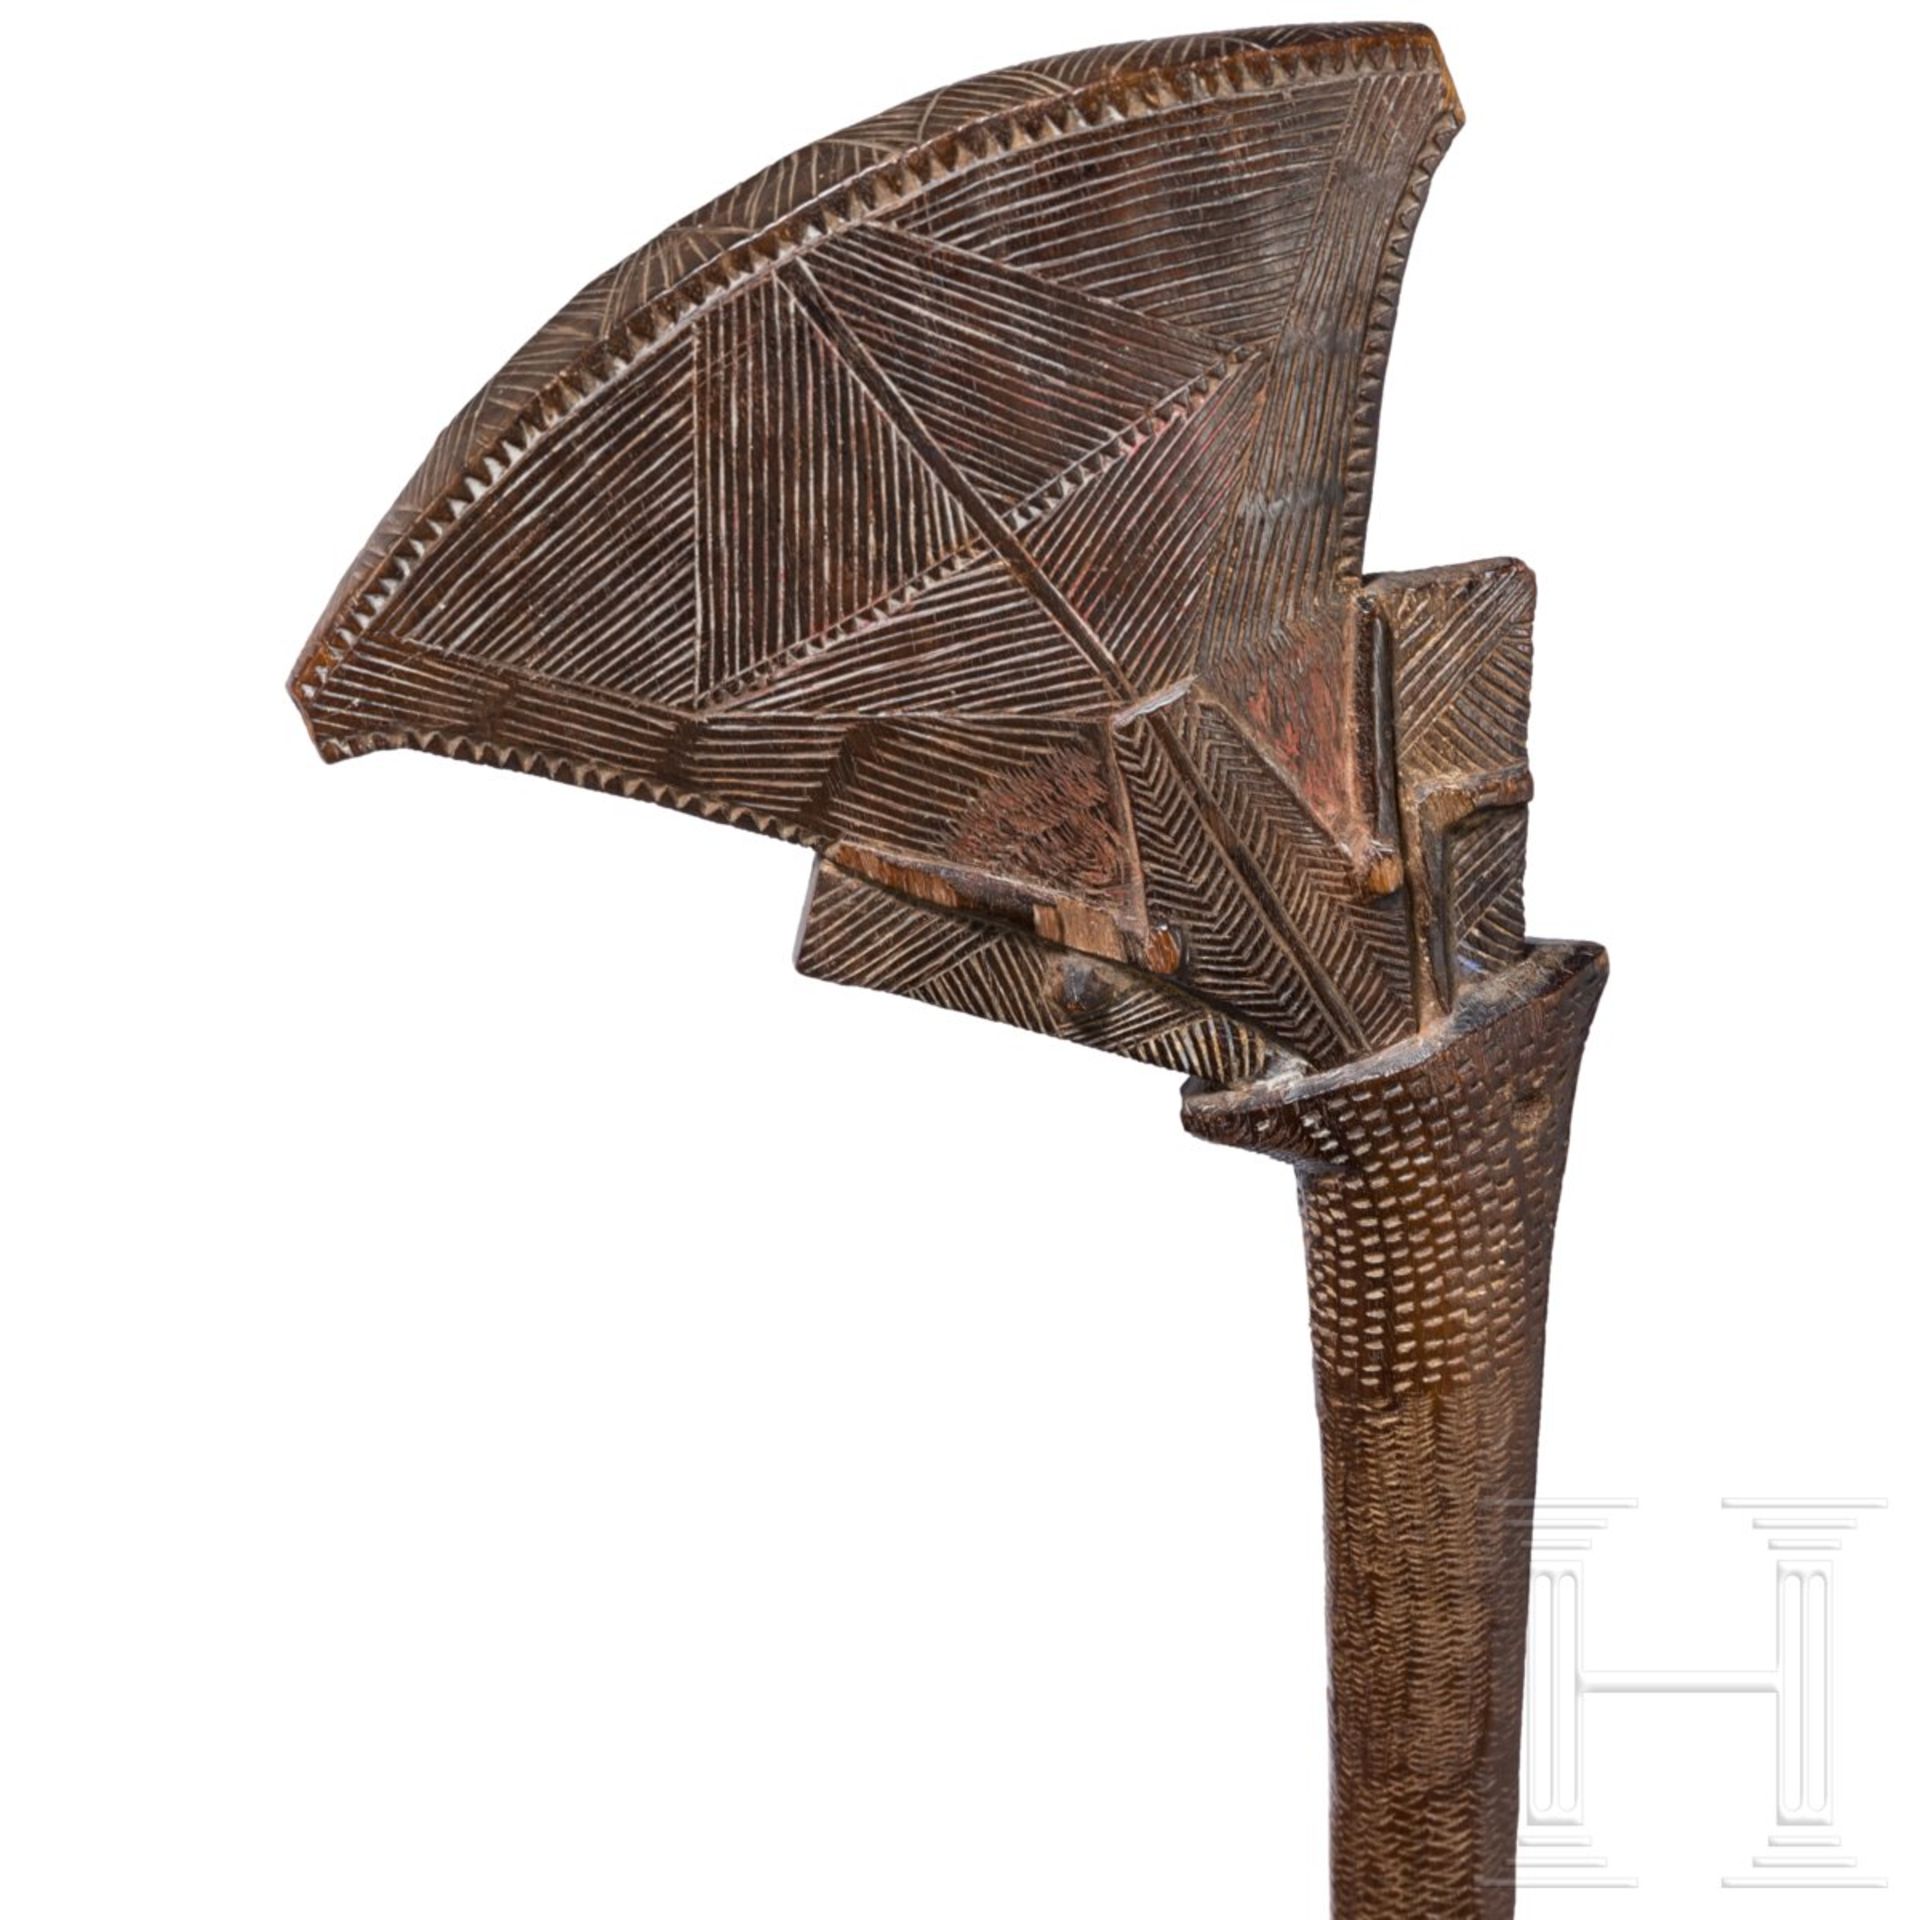 Zeremonialkeule „Gugu“, FidschiAusladender, fein beschnitzter schmaler Schlagkopf mit aufwändigem - Bild 4 aus 4